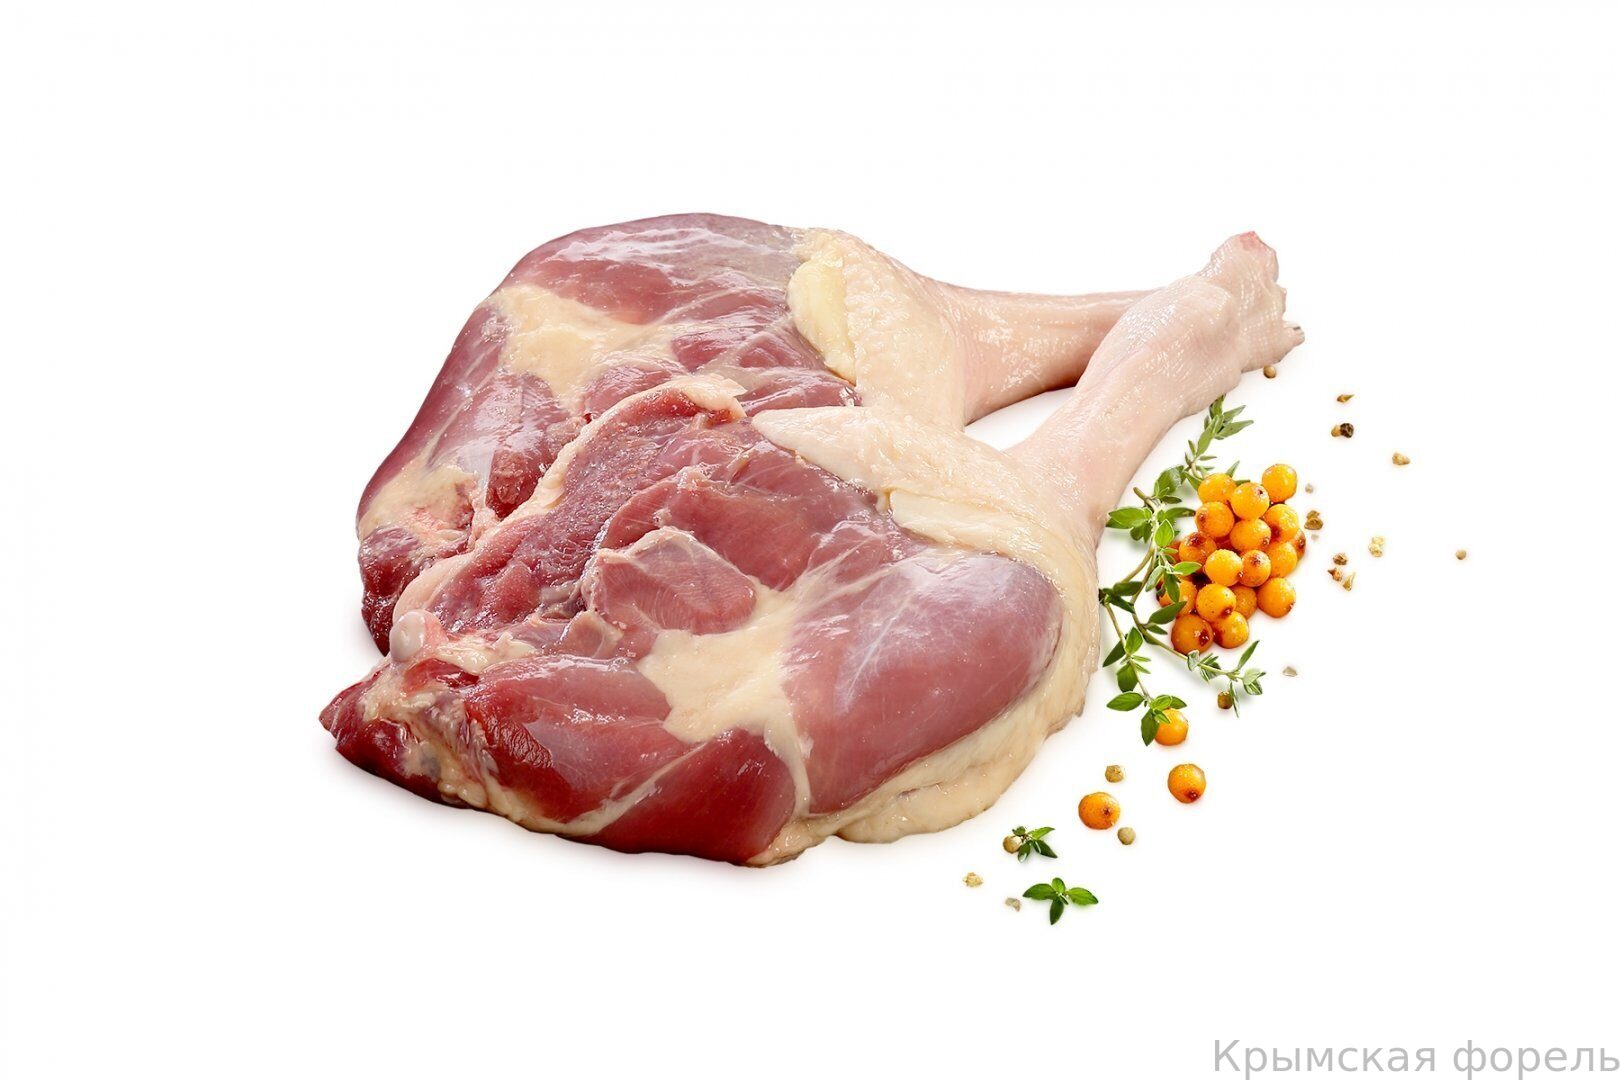 Вид мяса курица